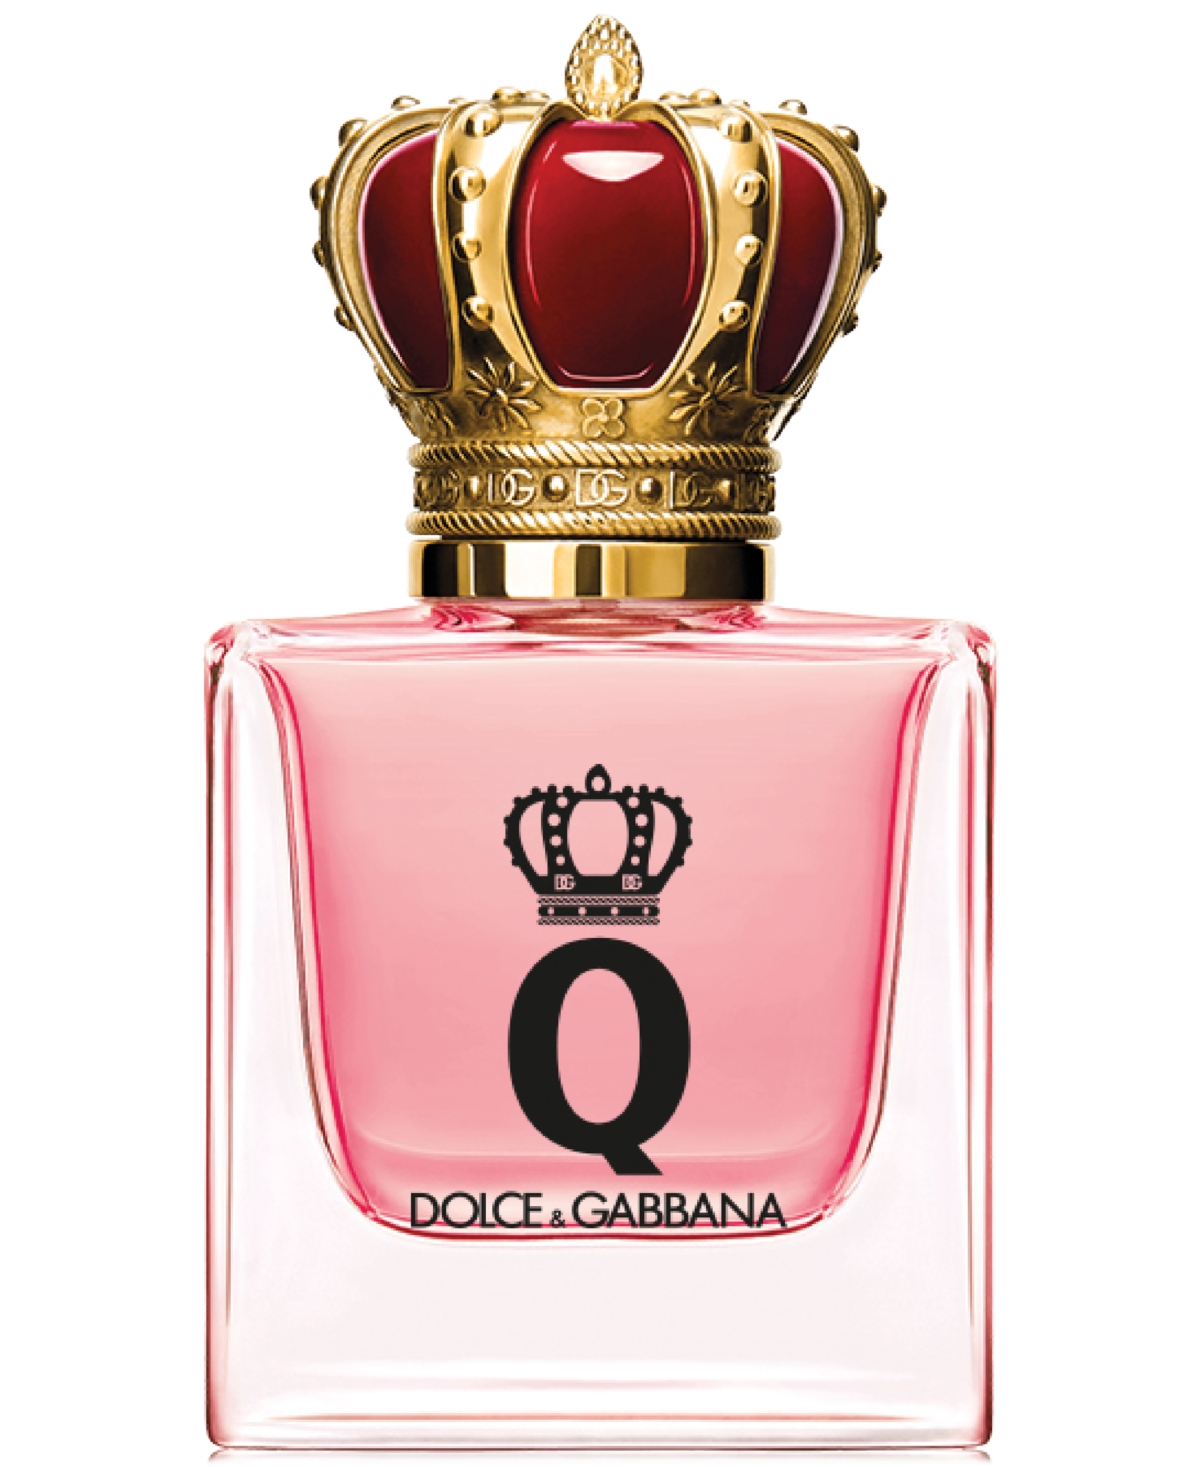 Dolce & Gabbana Q Eau De Parfum 1 oz / 30 ml Eau De Parfum Spray